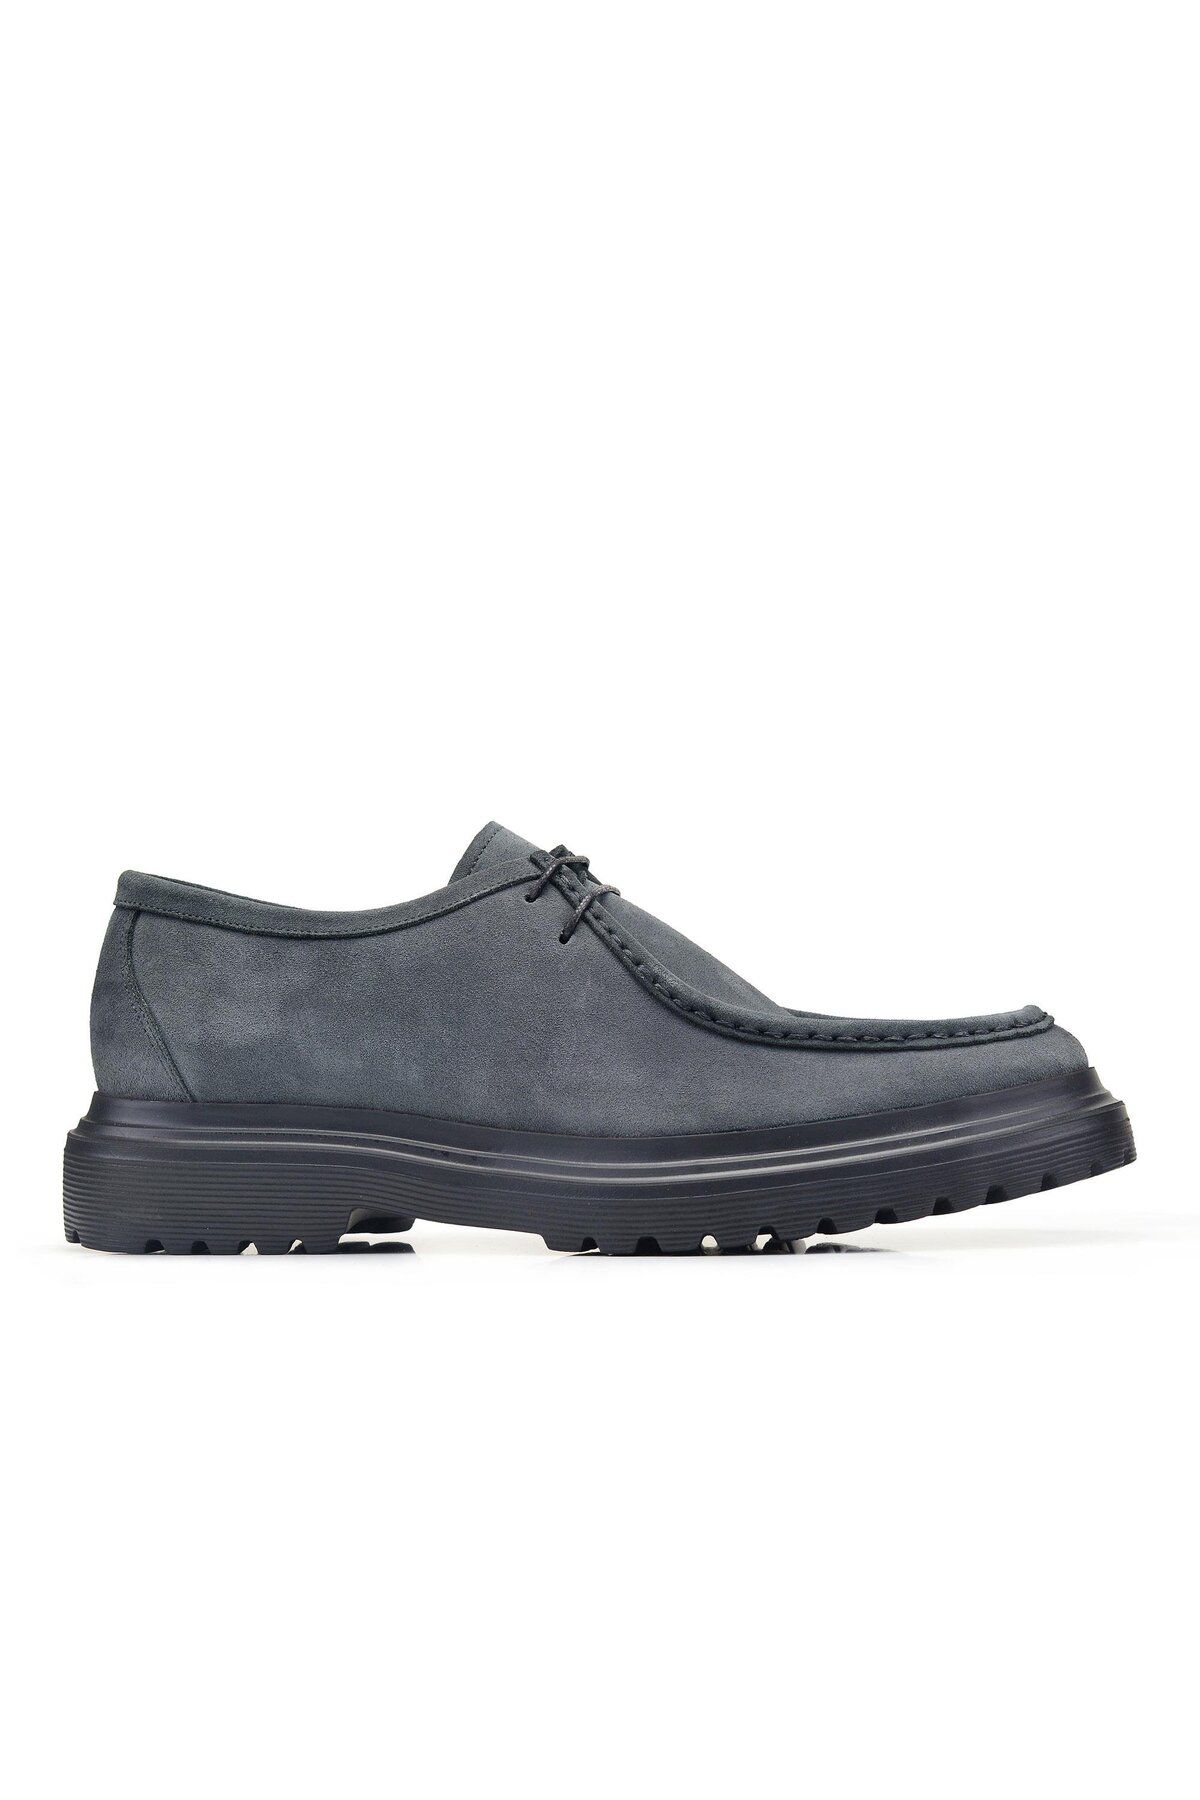 Nevzat Onay Süet Mavi Klasik Bağcıklı Erkek Ayakkabı -70355-